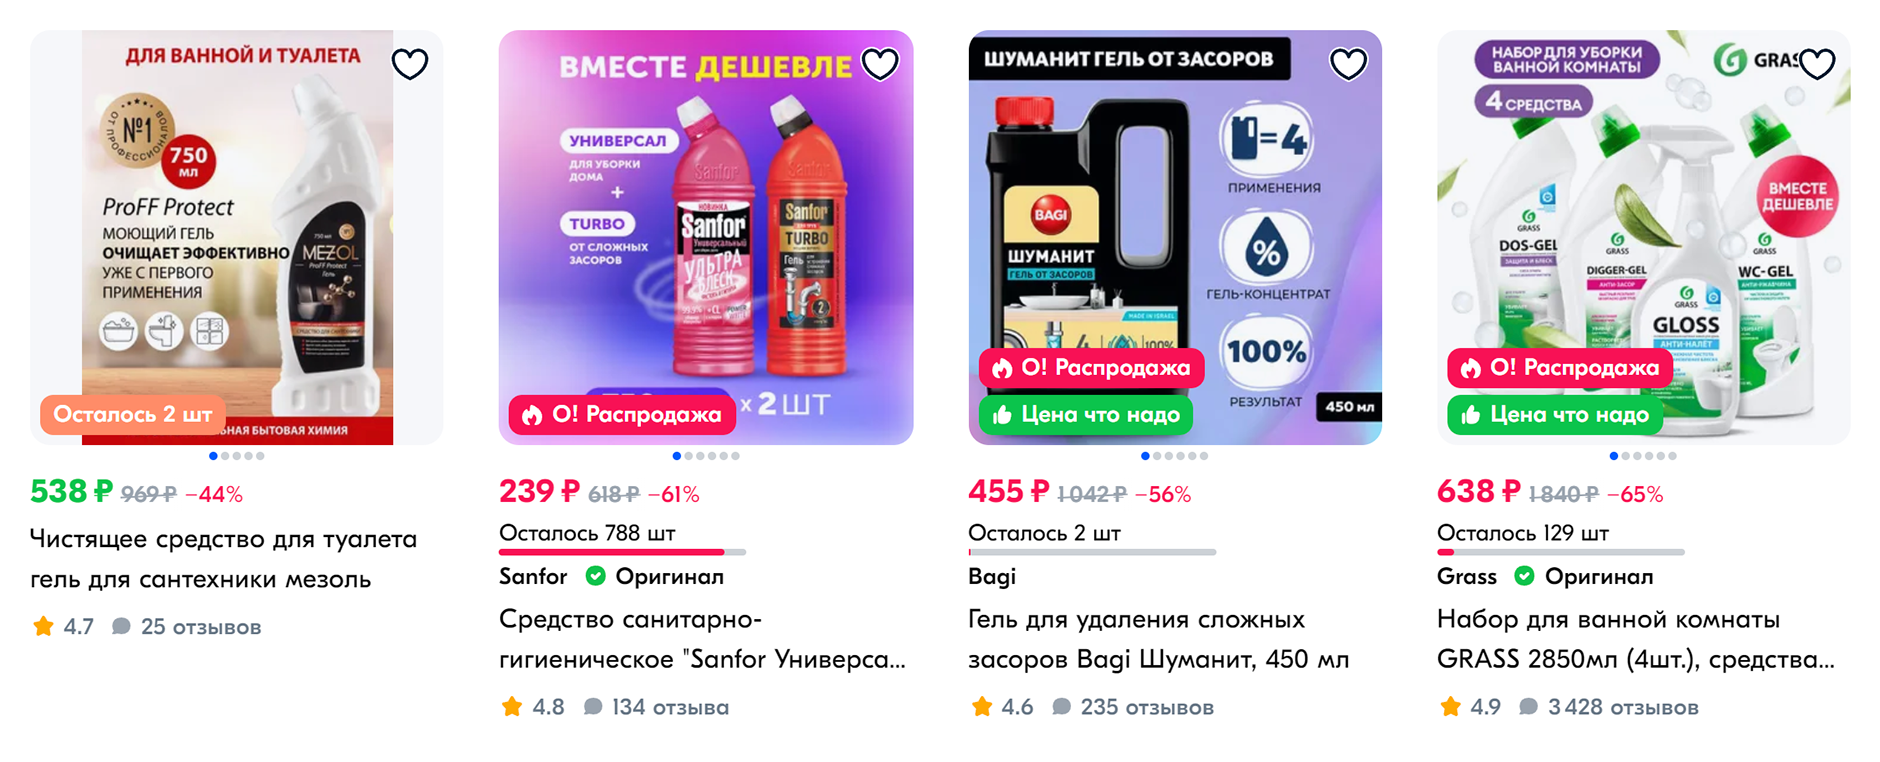 Цены на средства для прочистки труб. Источник: ozon.ru